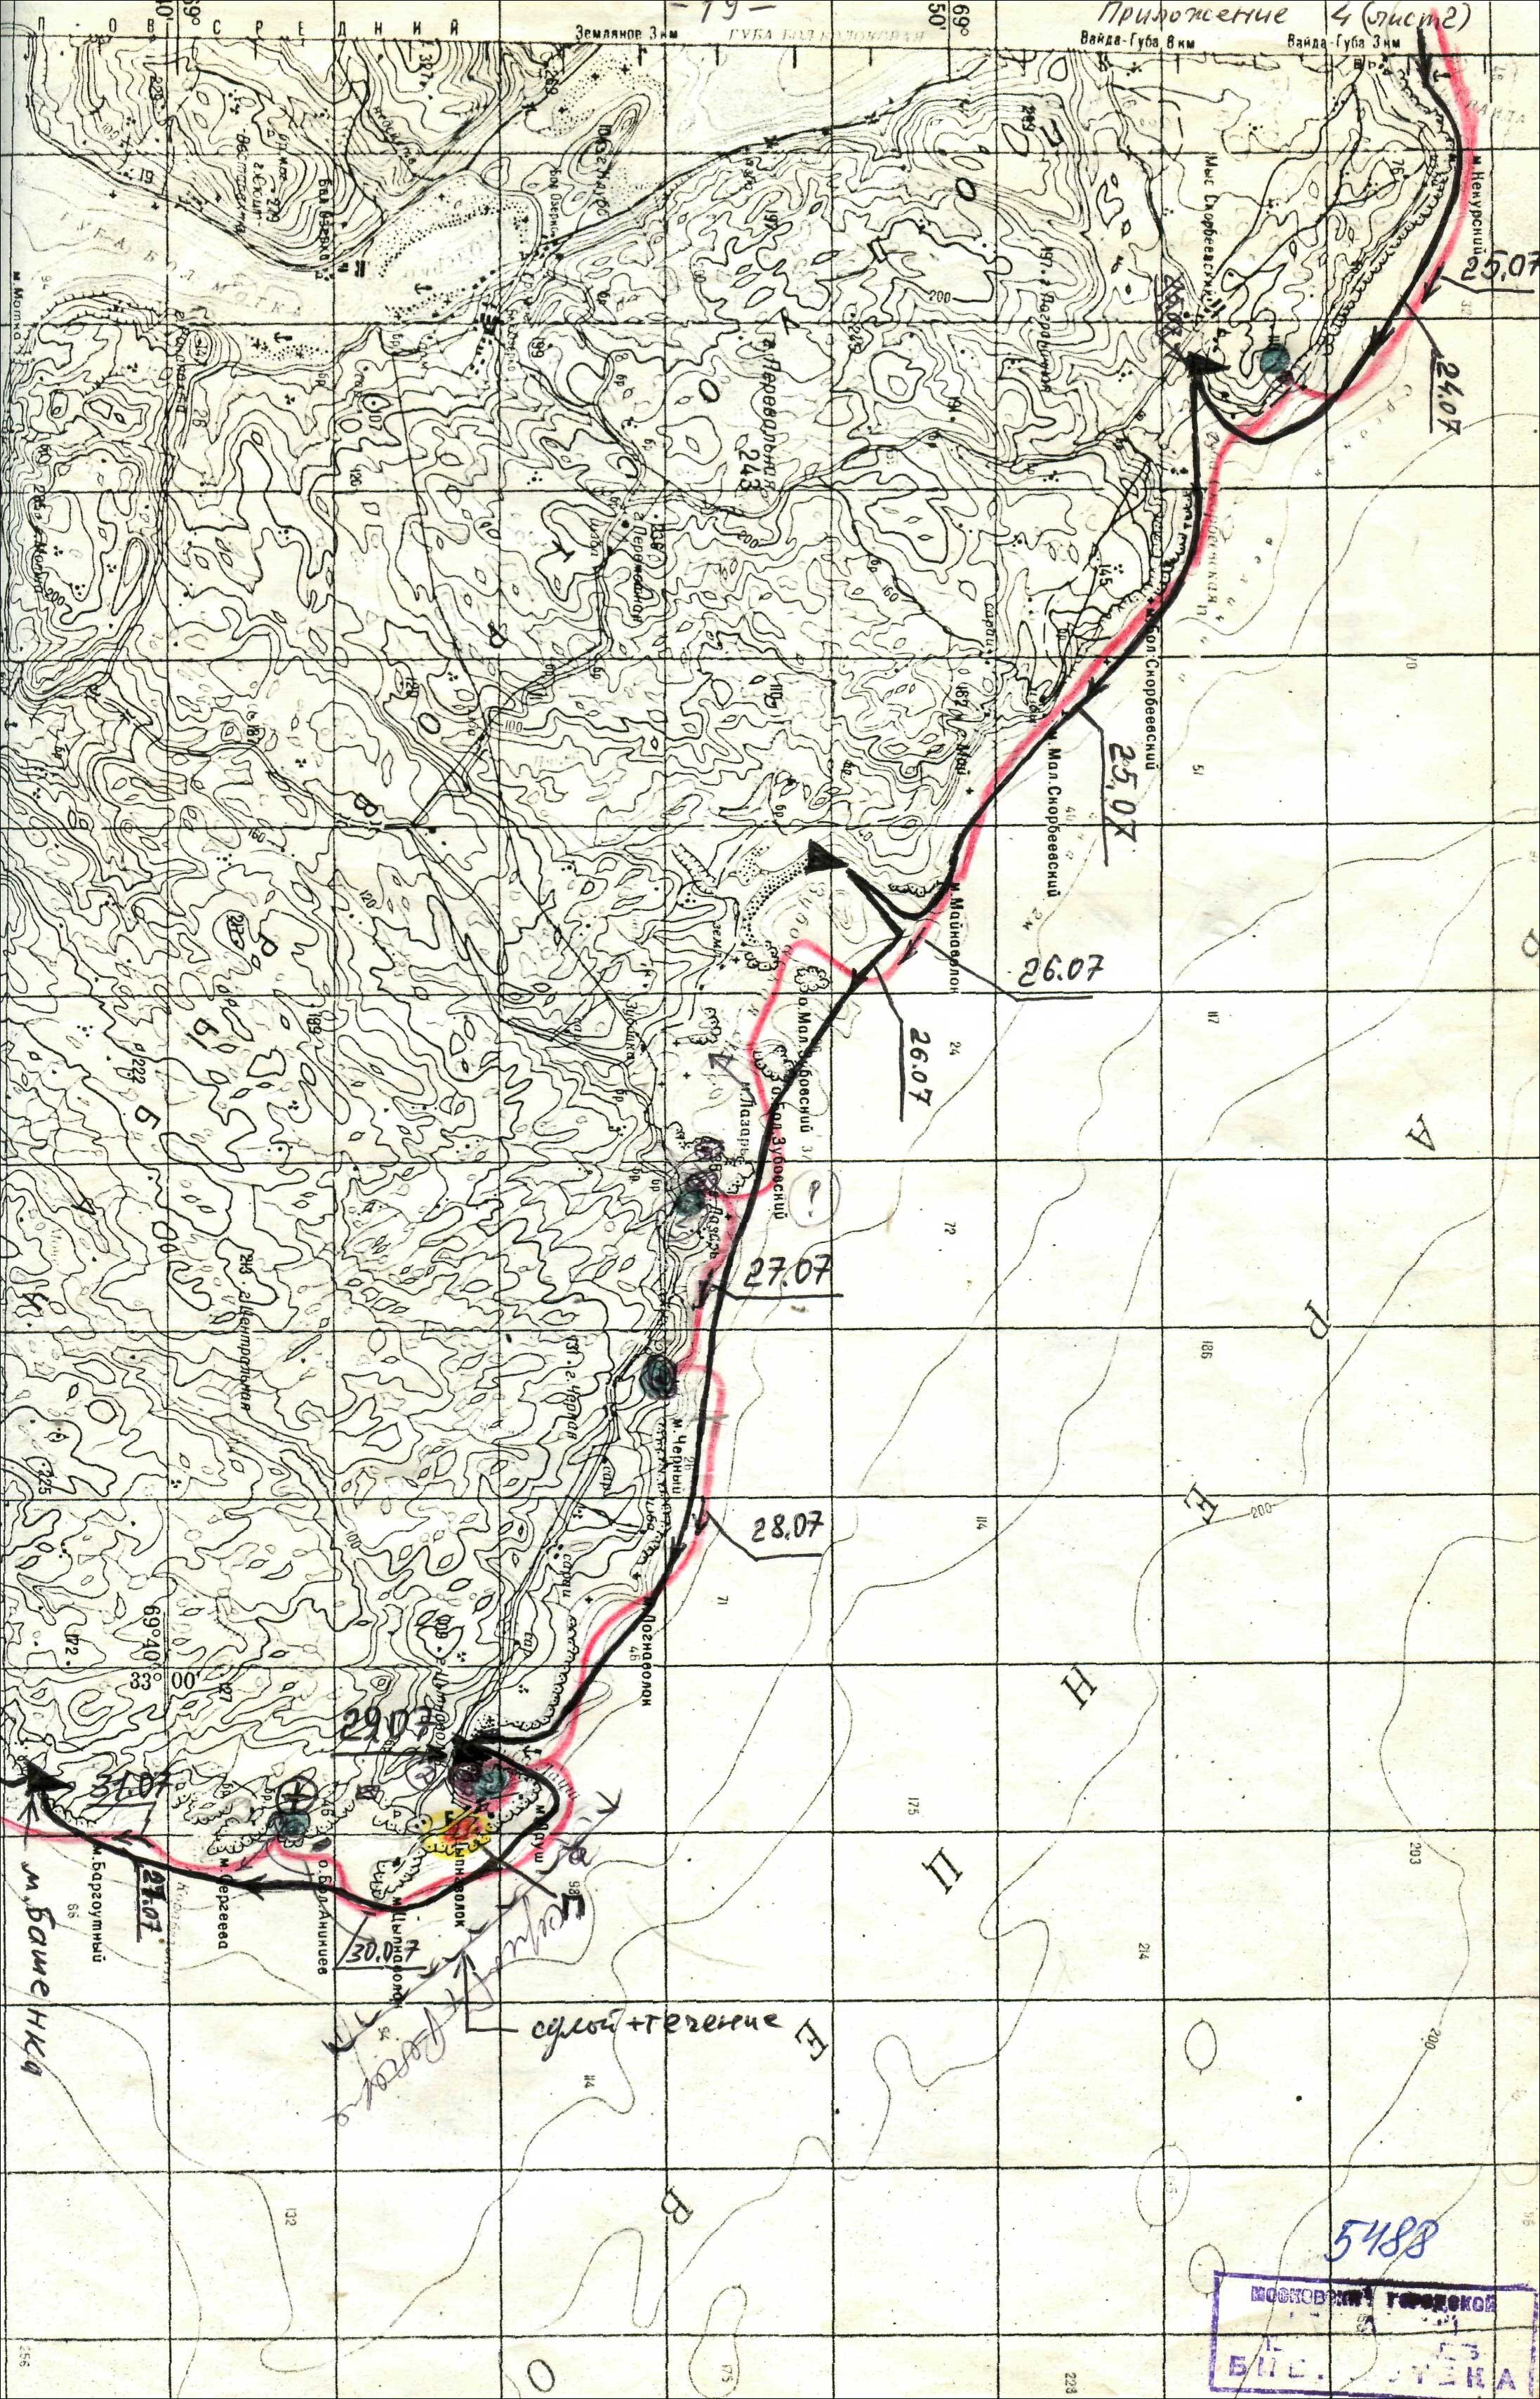 Отчет о парусном походе 3 категории сложности в районе Баренцева моря по маршруту: Губа Печенга - п/о Рыбачий - Кольский залив (Мишуково)